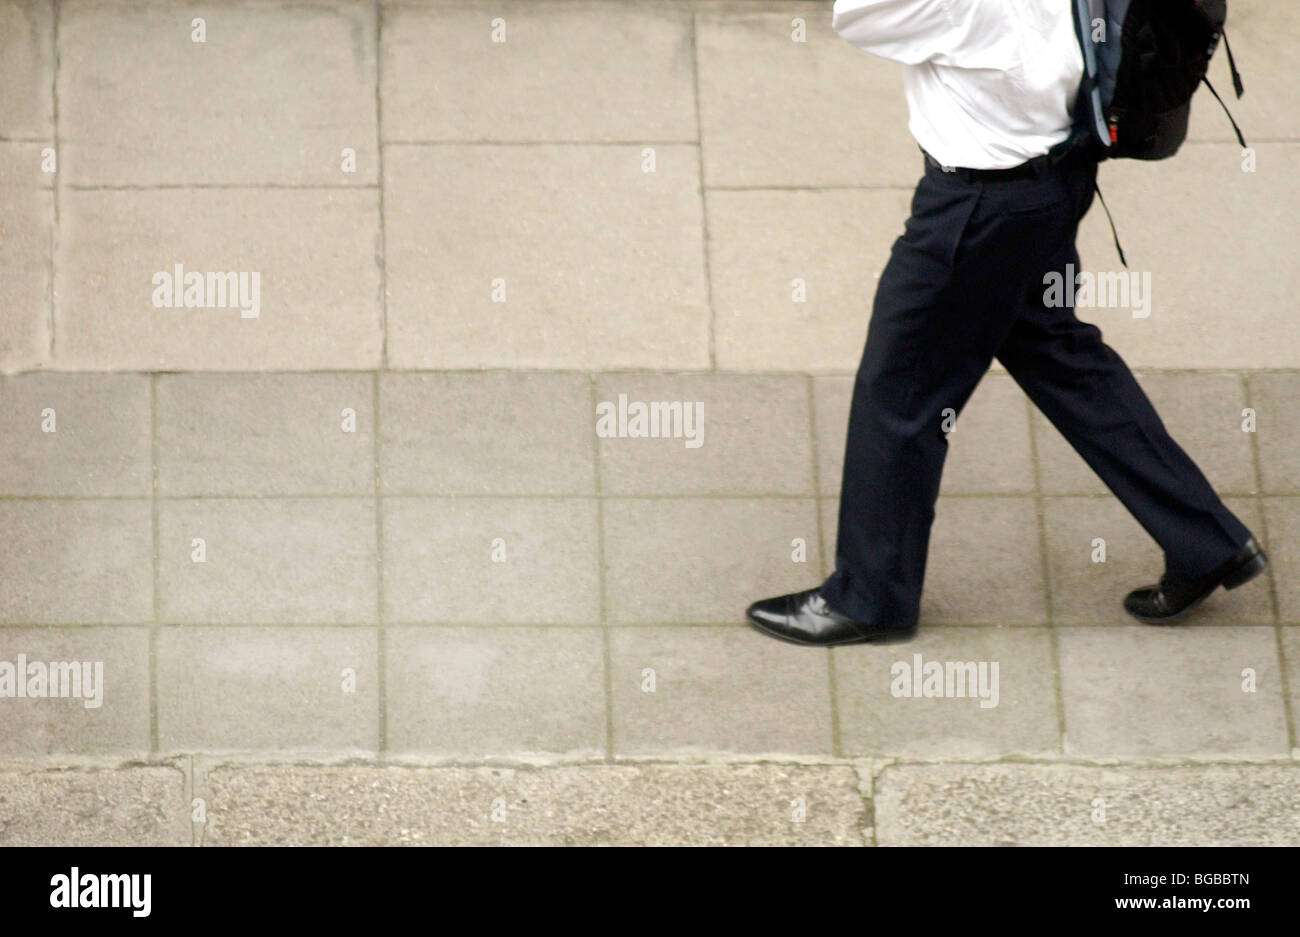 Image libre photo de London business man au travail à pied, sac à dos sur le trottoir London UK Banque D'Images